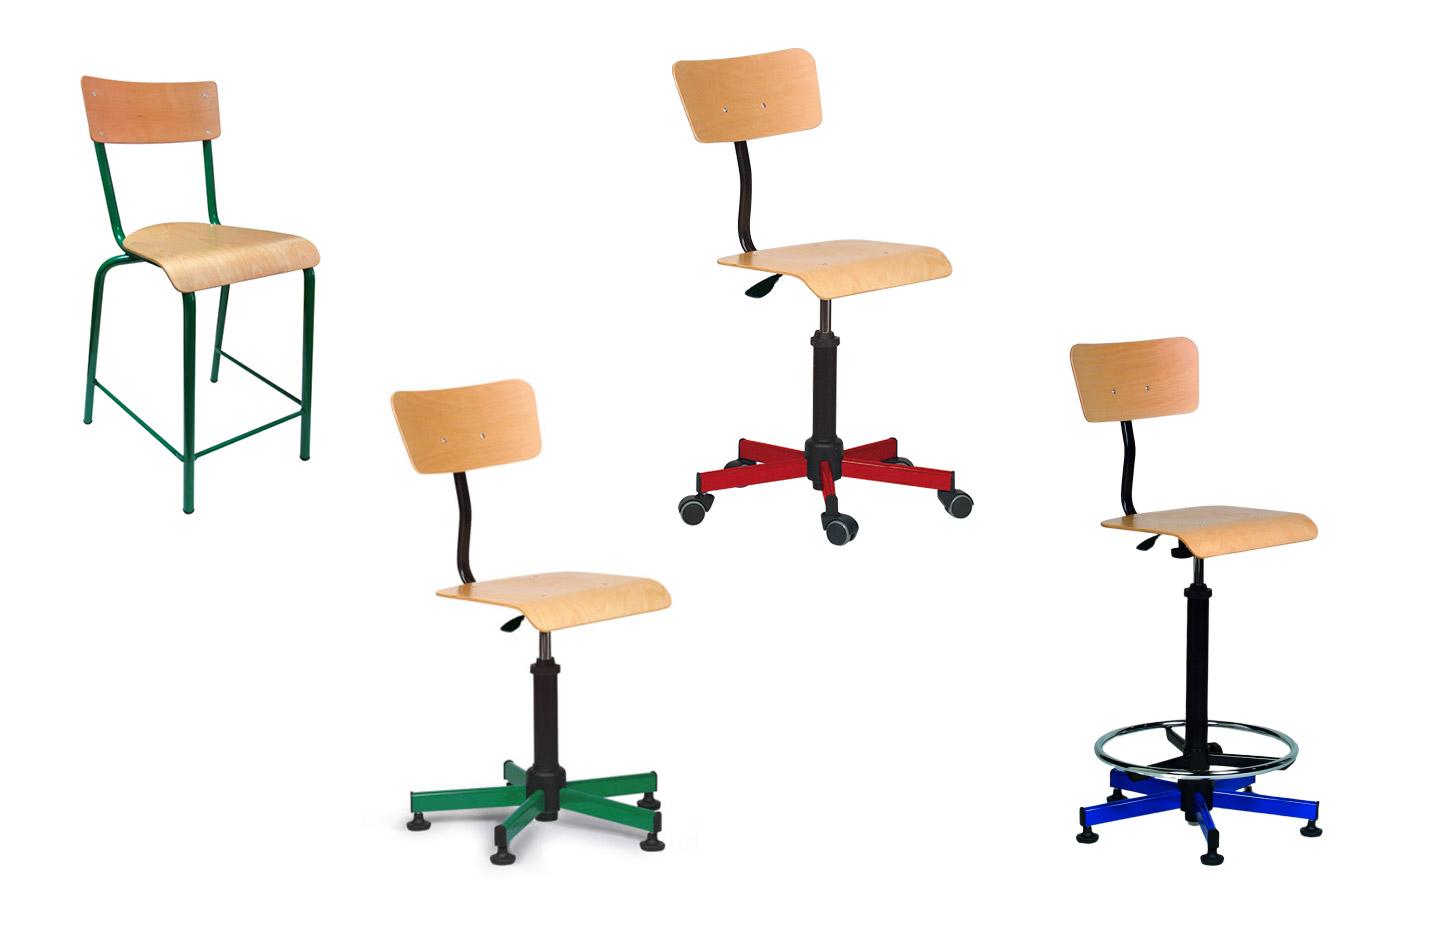 Chaise scolaire 4 pieds ou sur roulettes ou tabouret, gamme Pascal - France Bureau